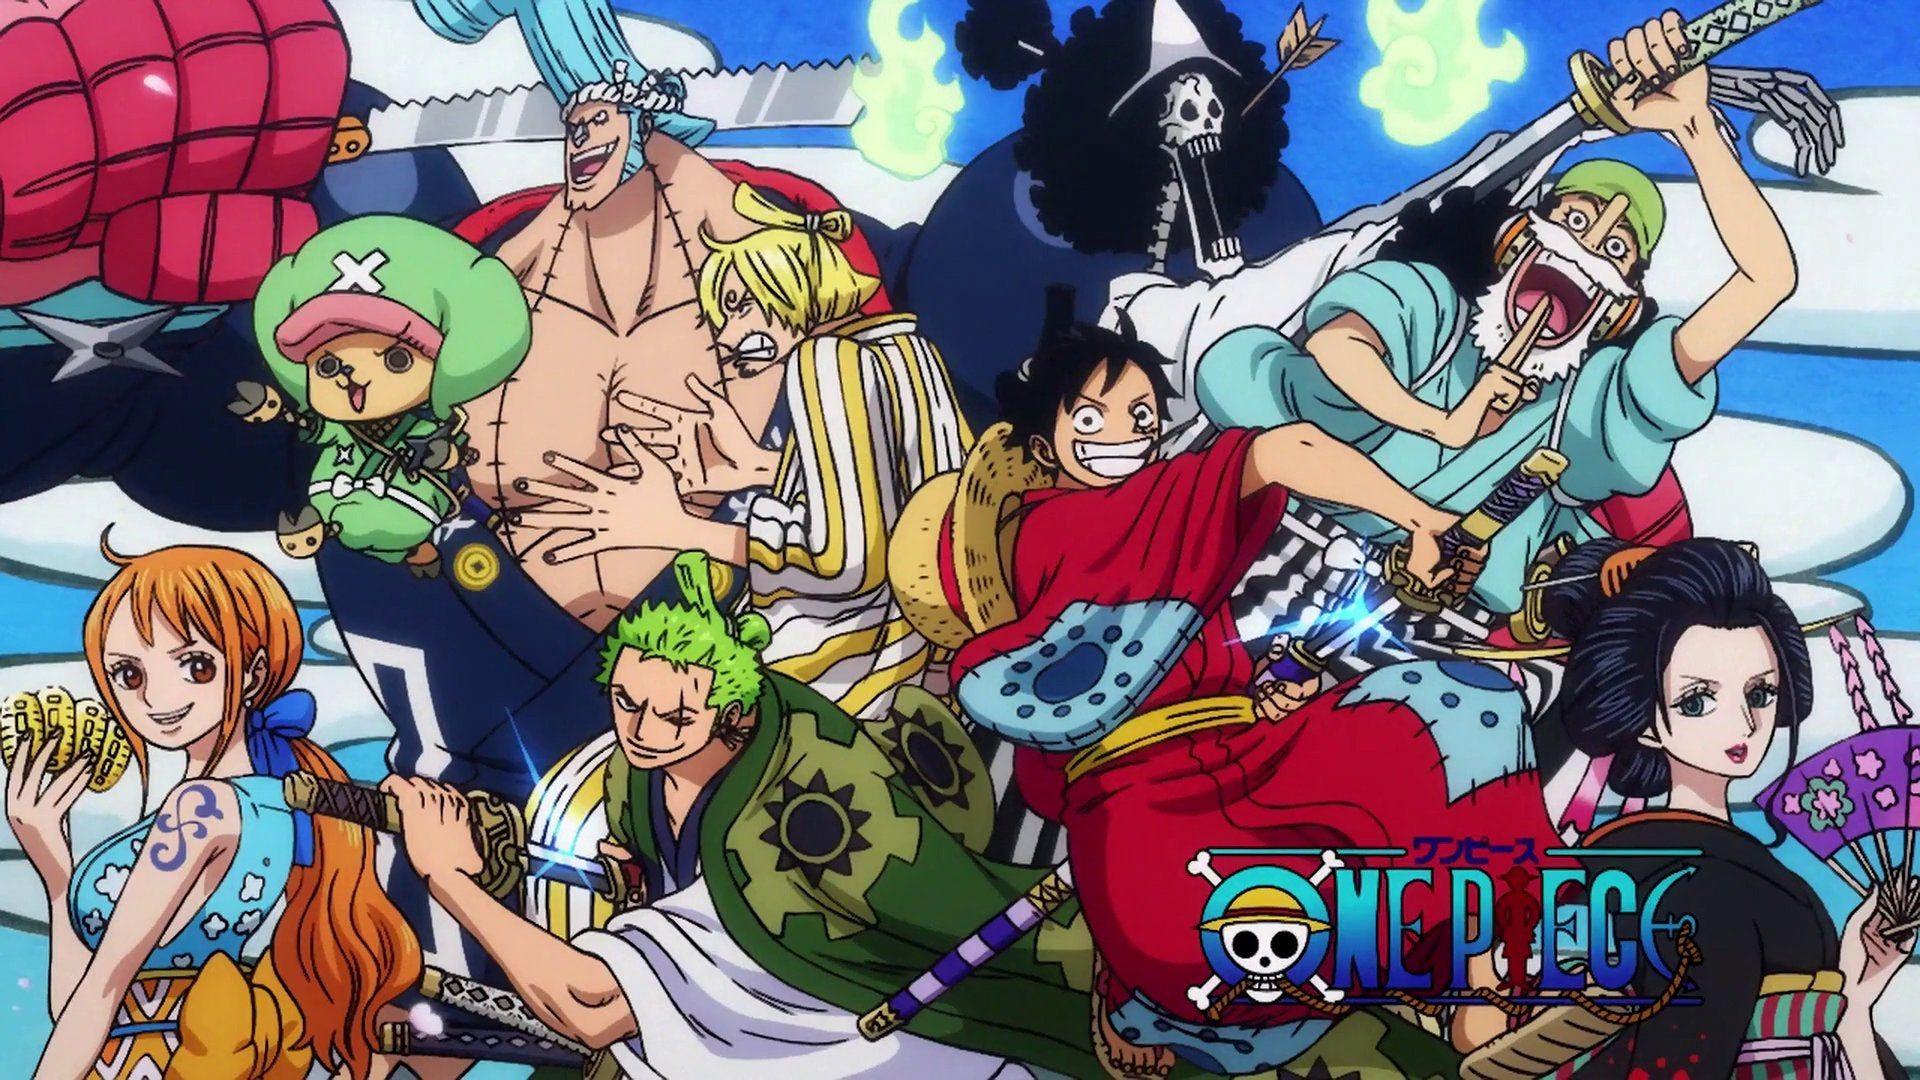 Manga One Piece Wallpapers: Bạn là fan hâm mộ Manga One Piece và đang tìm kiếm những hình nền đẹp để trang trí cho thiết bị của mình? Hãy ghé thăm thư viện Manga One Piece Wallpapers của chúng tôi. Bạn sẽ được ngắm nhìn những hình nền cực kỳ đặc sắc và đẹp mắt với đầy đủ các nhân vật trong bộ Manga One Piece. Hãy tải về và trang trí thiết bị của mình để thể hiện sự yêu thích của bạn với bộ Manga này.